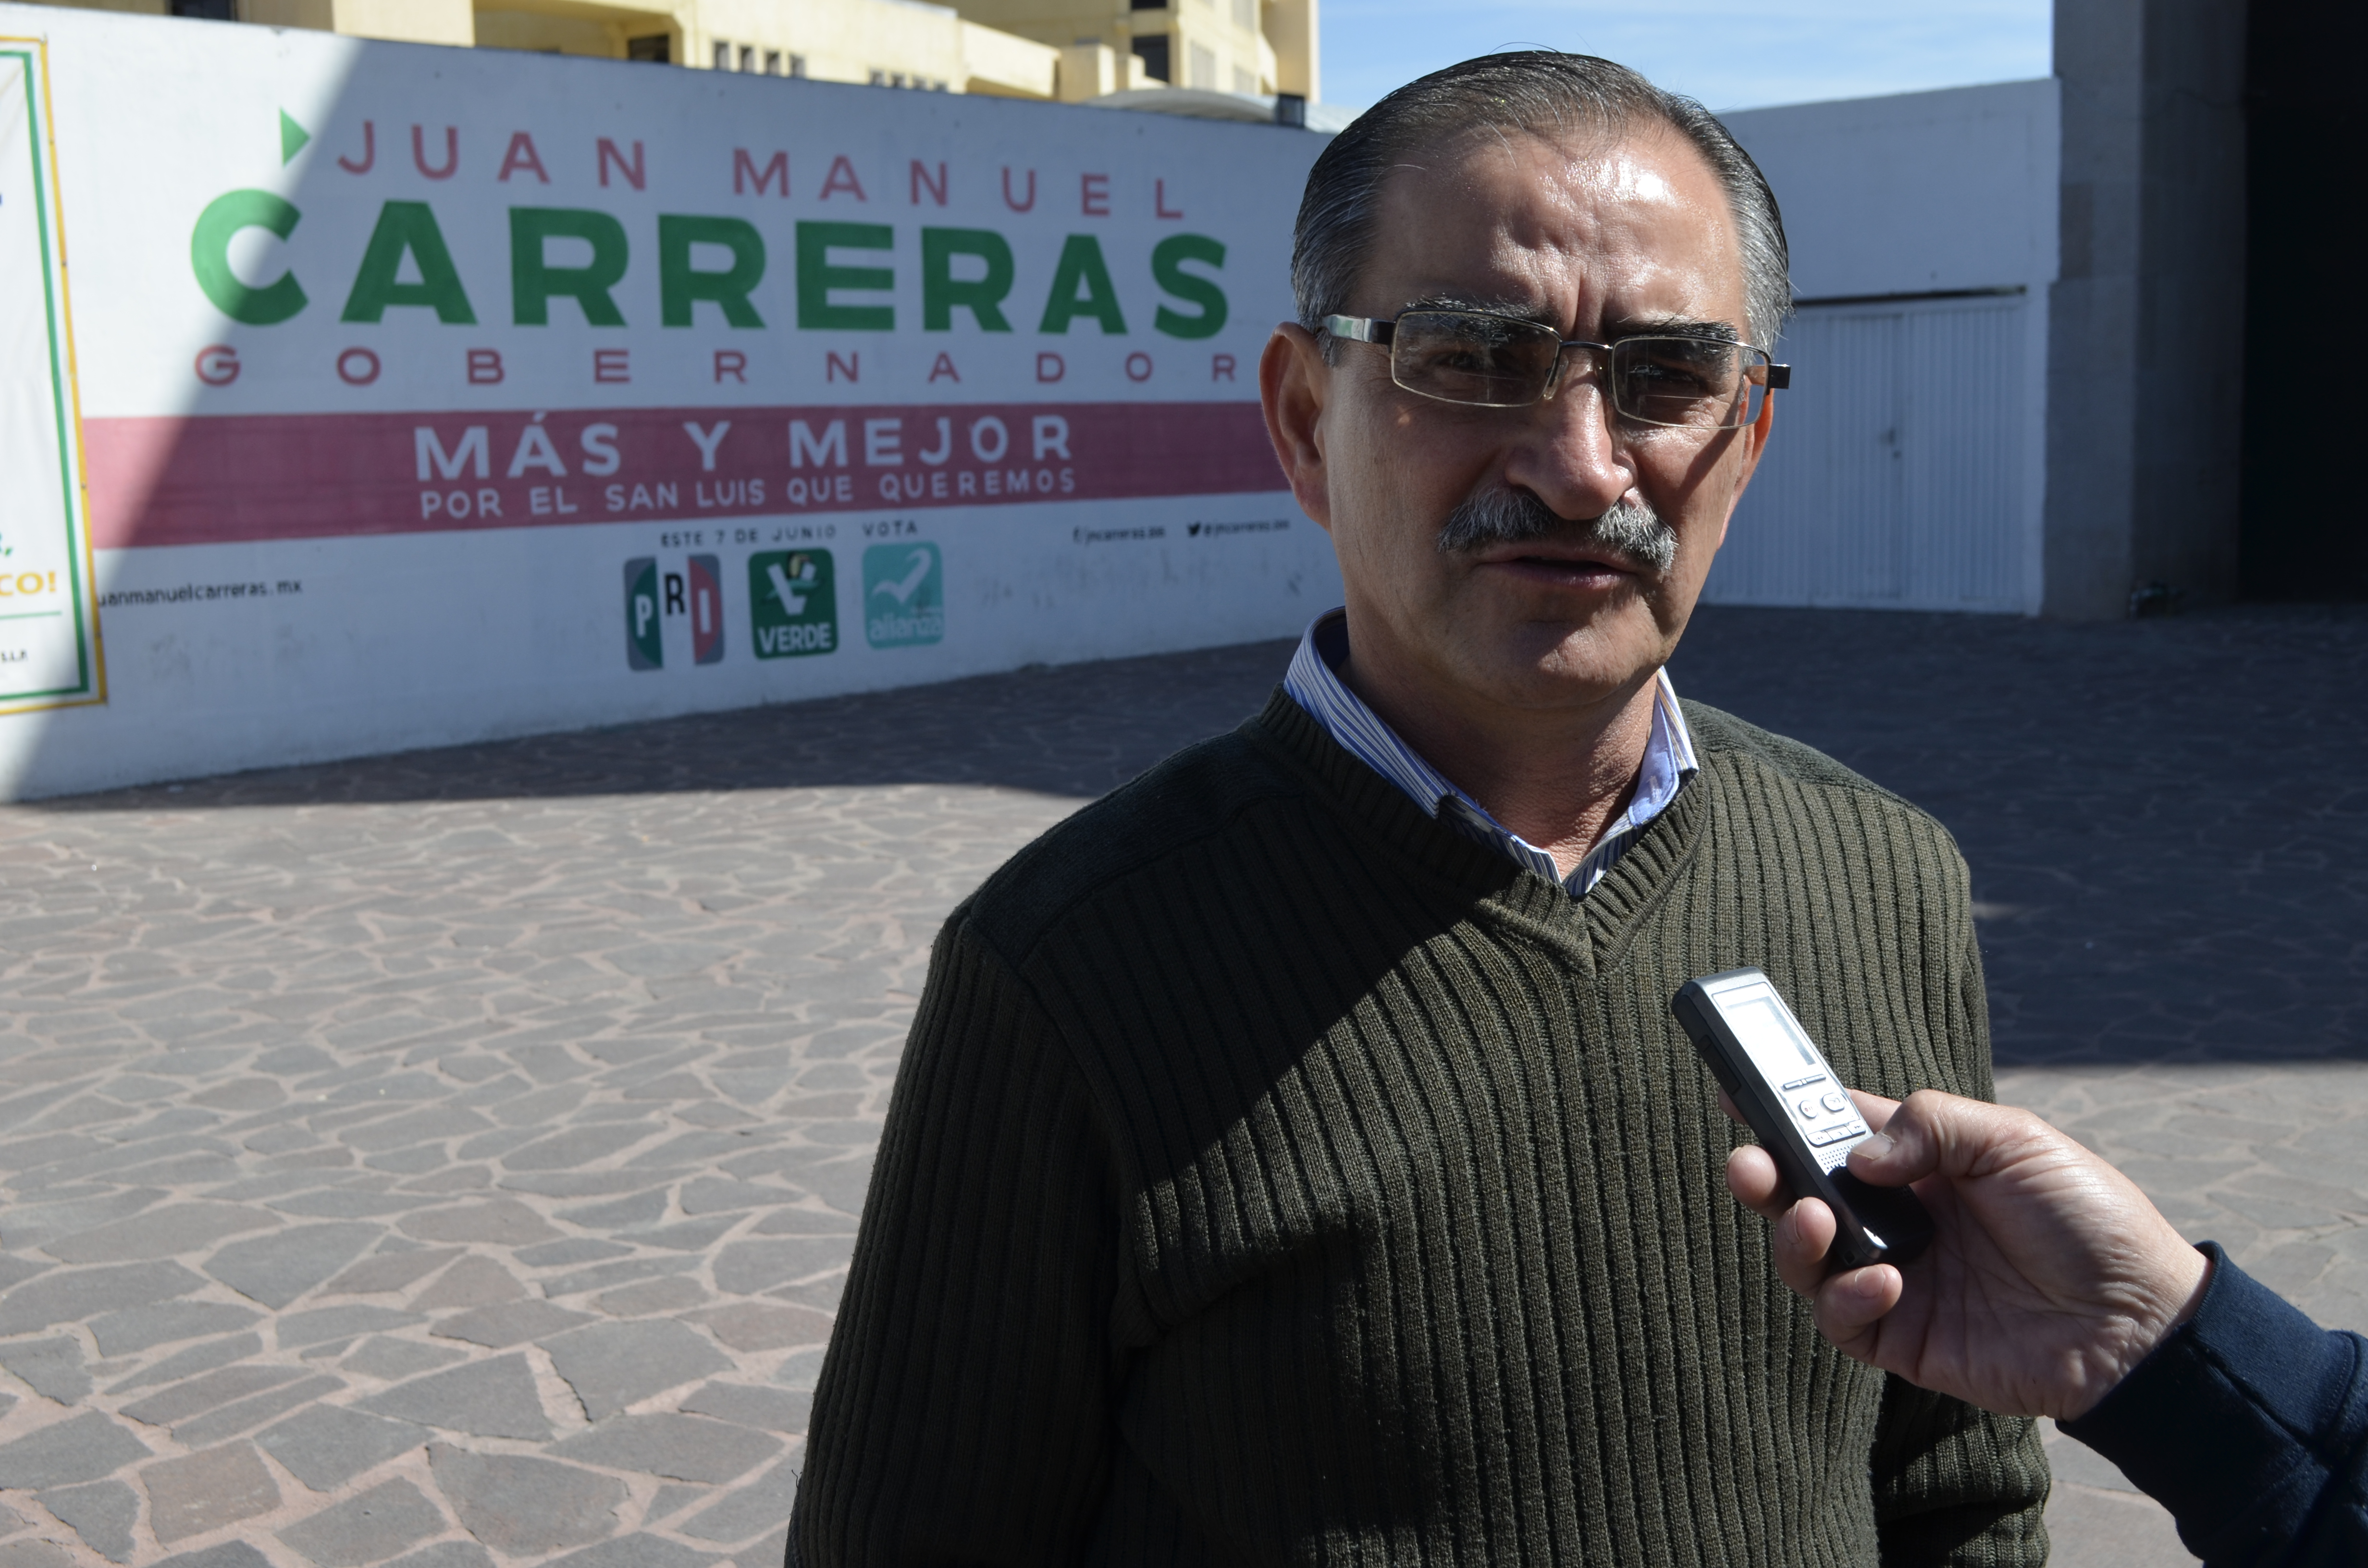  El PRI tiene con quien ganar la zona metropolitana a la Gallardía: Juárez Córdova